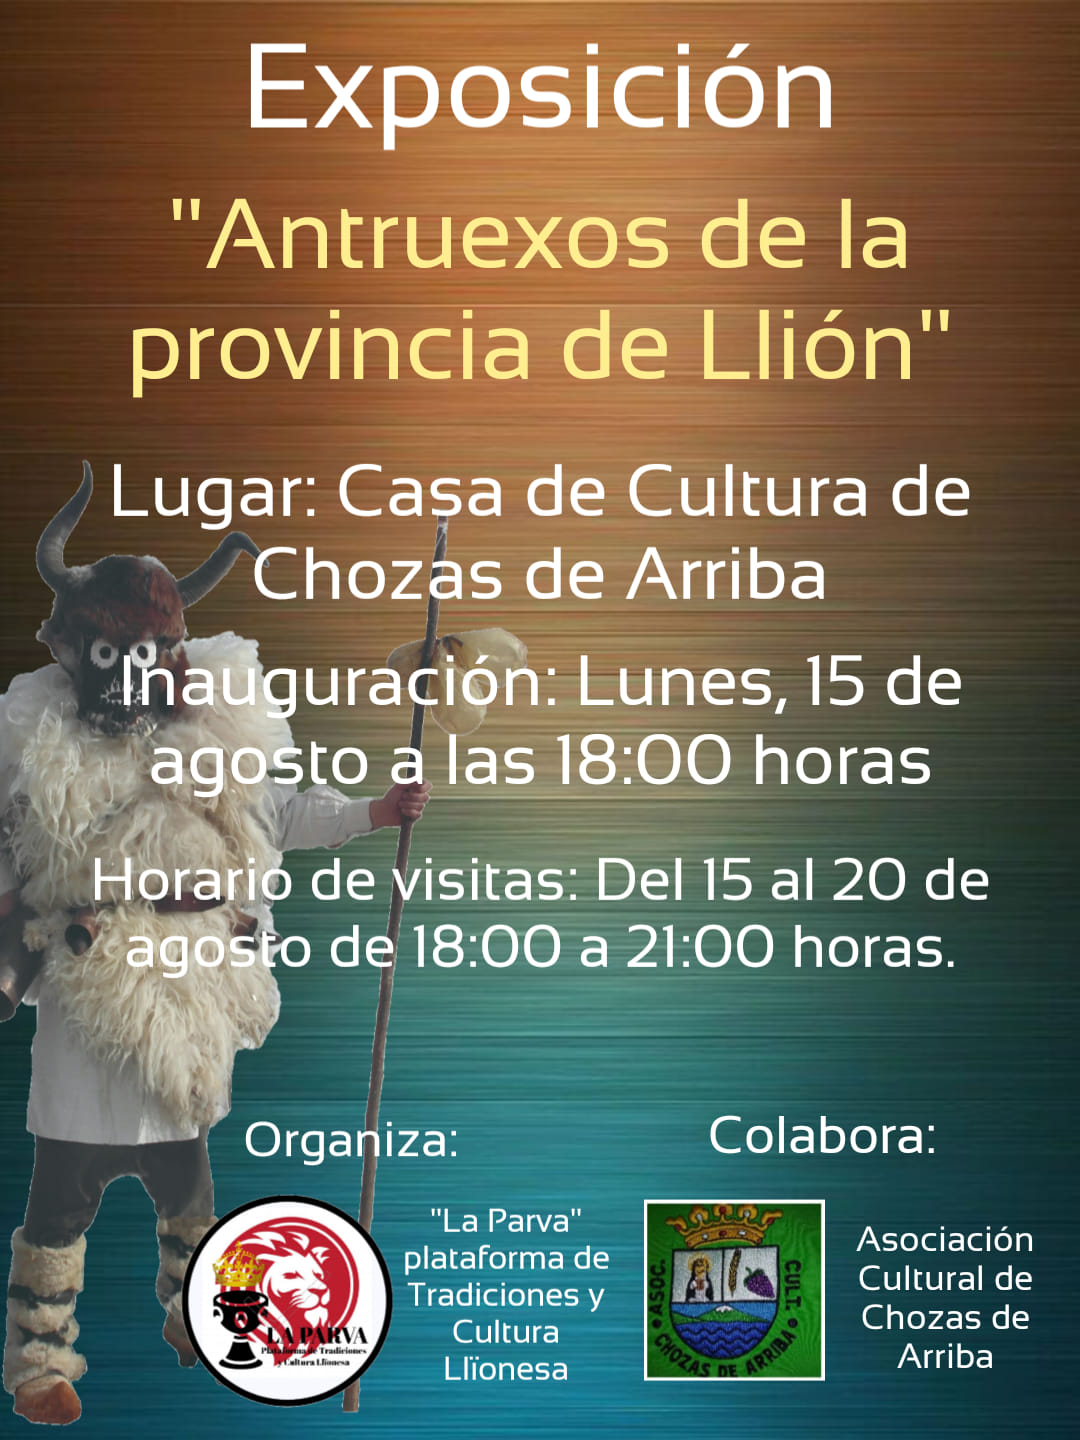 Exposición Antruexos de la provincia de Llión